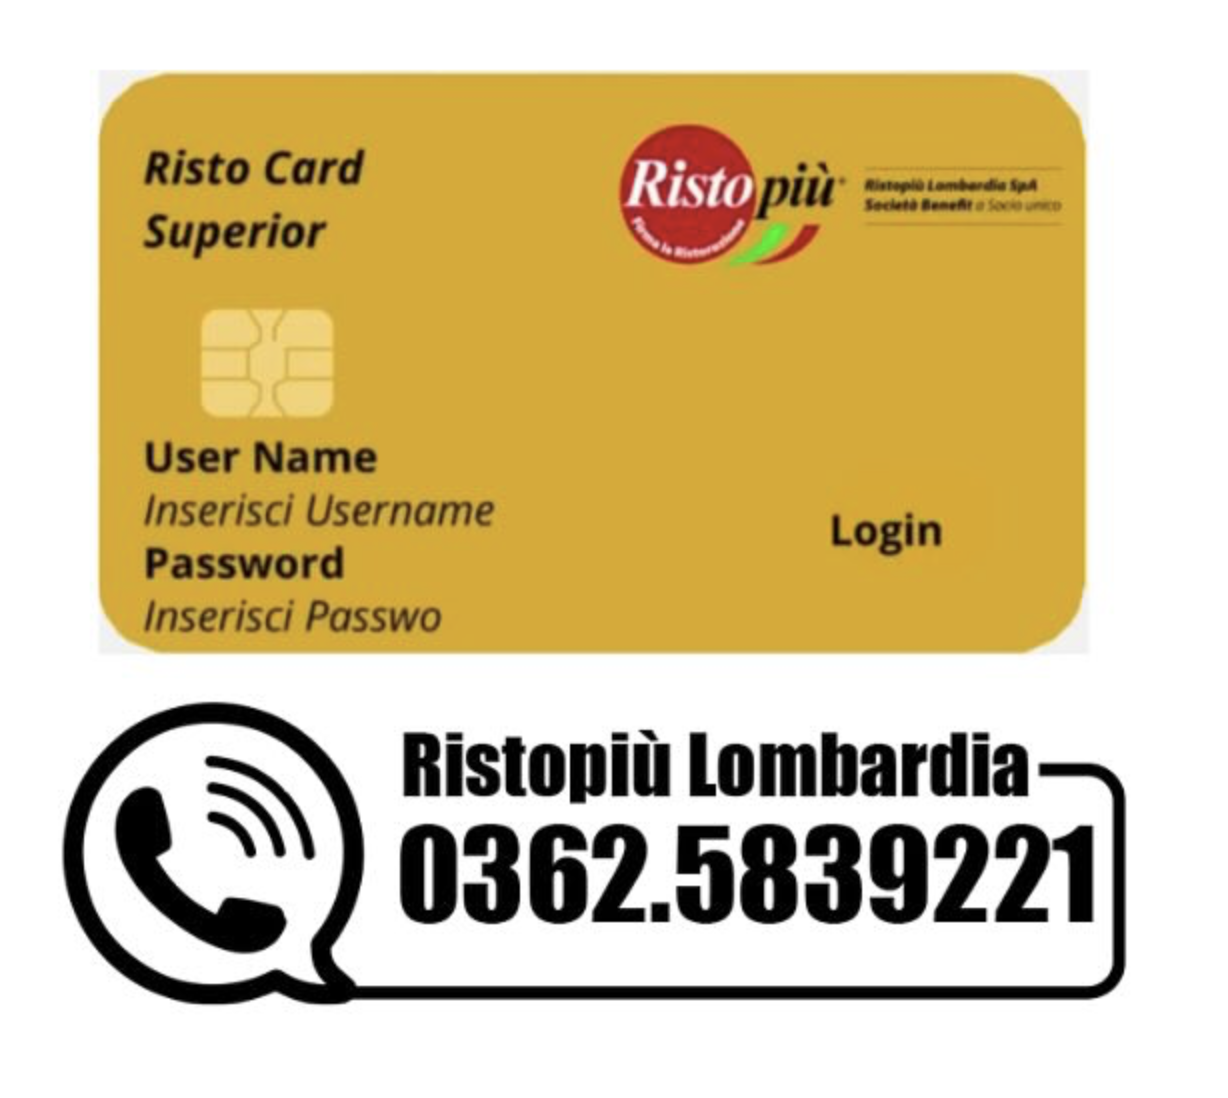 Hai attivato la Risto Quality Card?